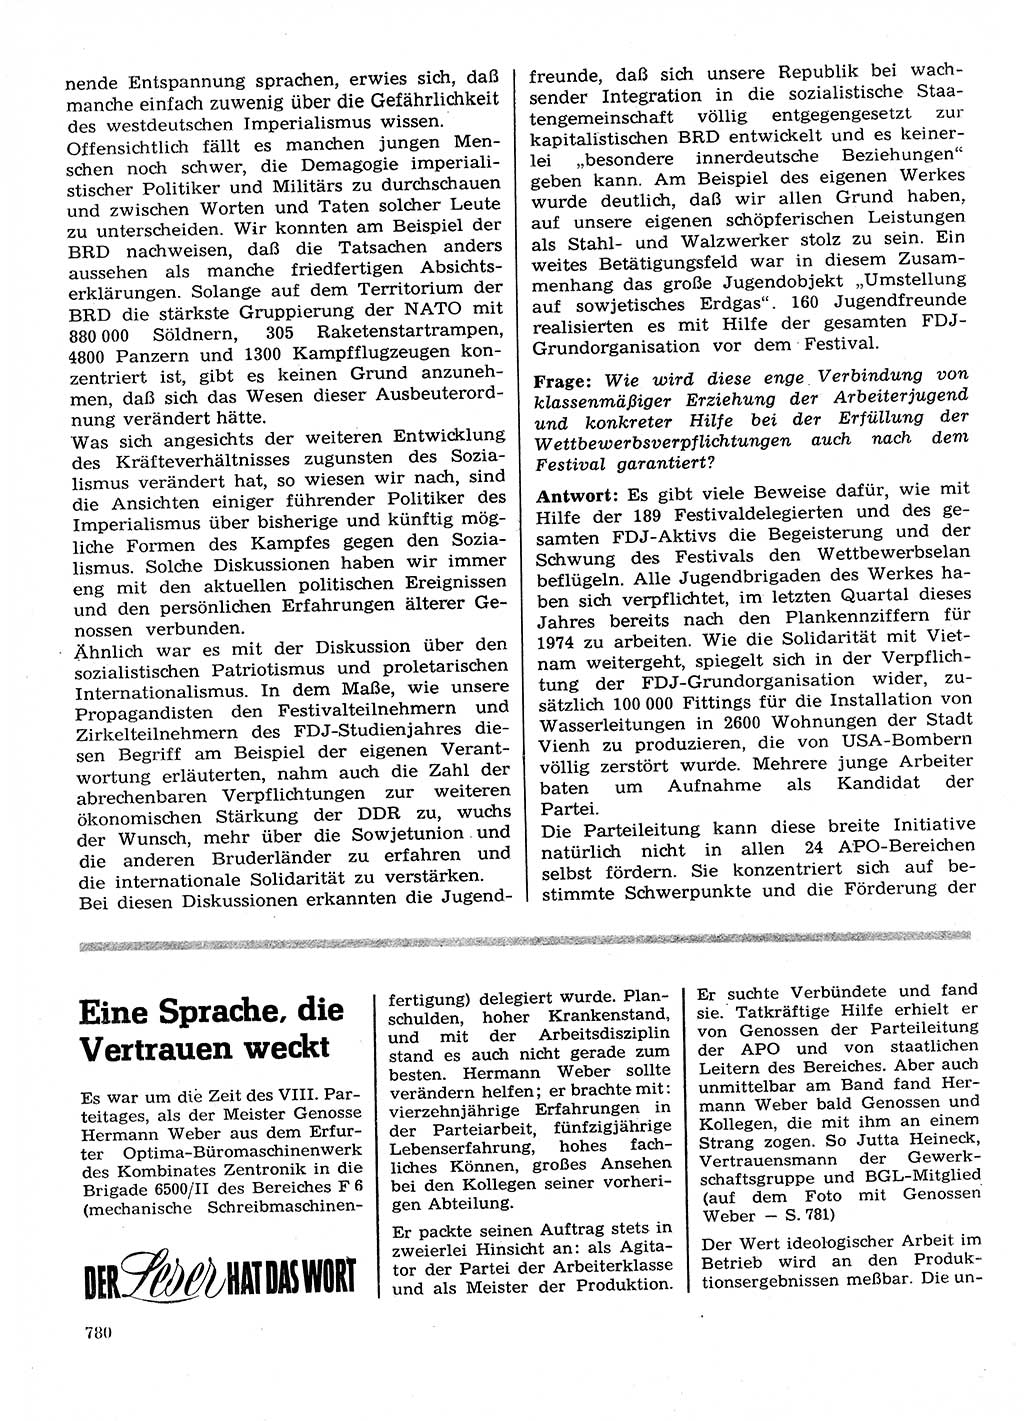 Neuer Weg (NW), Organ des Zentralkomitees (ZK) der SED (Sozialistische Einheitspartei Deutschlands) für Fragen des Parteilebens, 28. Jahrgang [Deutsche Demokratische Republik (DDR)] 1973, Seite 780 (NW ZK SED DDR 1973, S. 780)